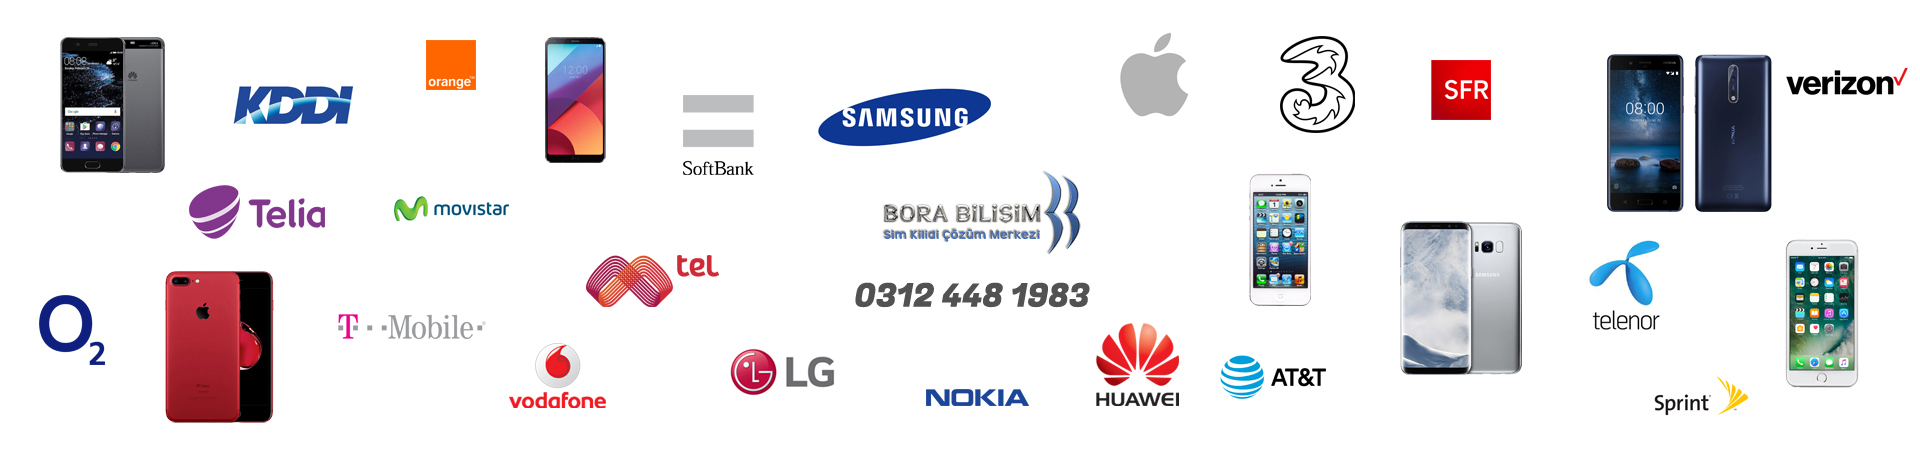 Bora Bilişim Üzerinde operatör, cep telefonu ve markaların logoları